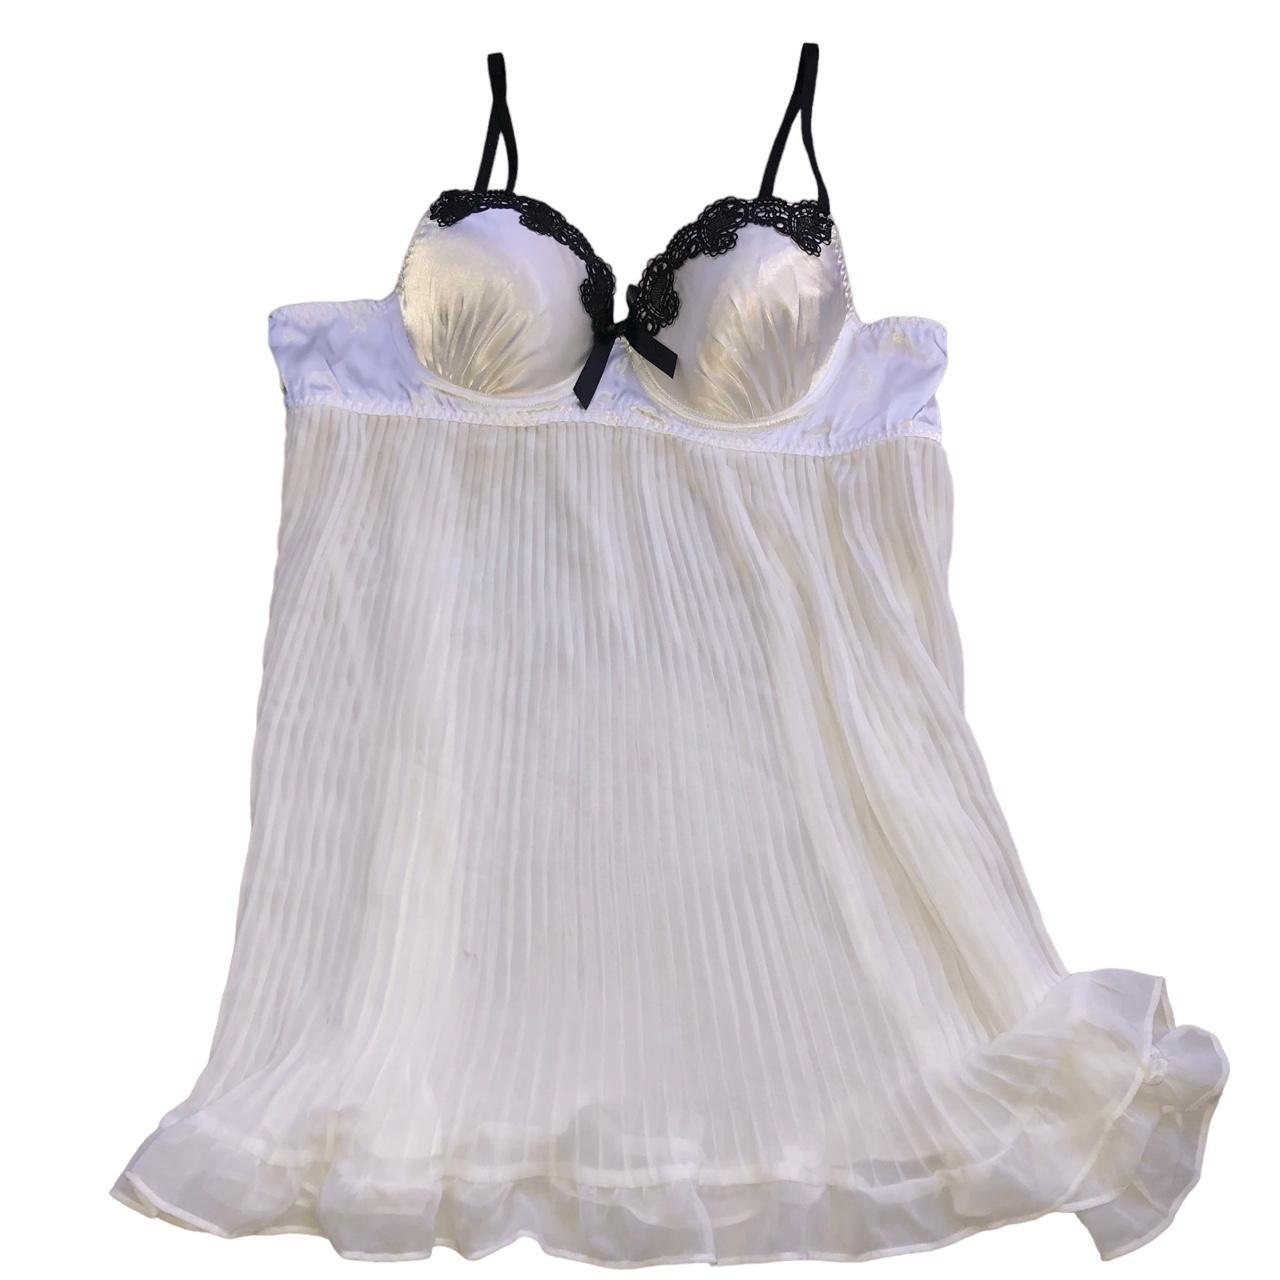 Linea Donatella Women's Black and White Vest (2)